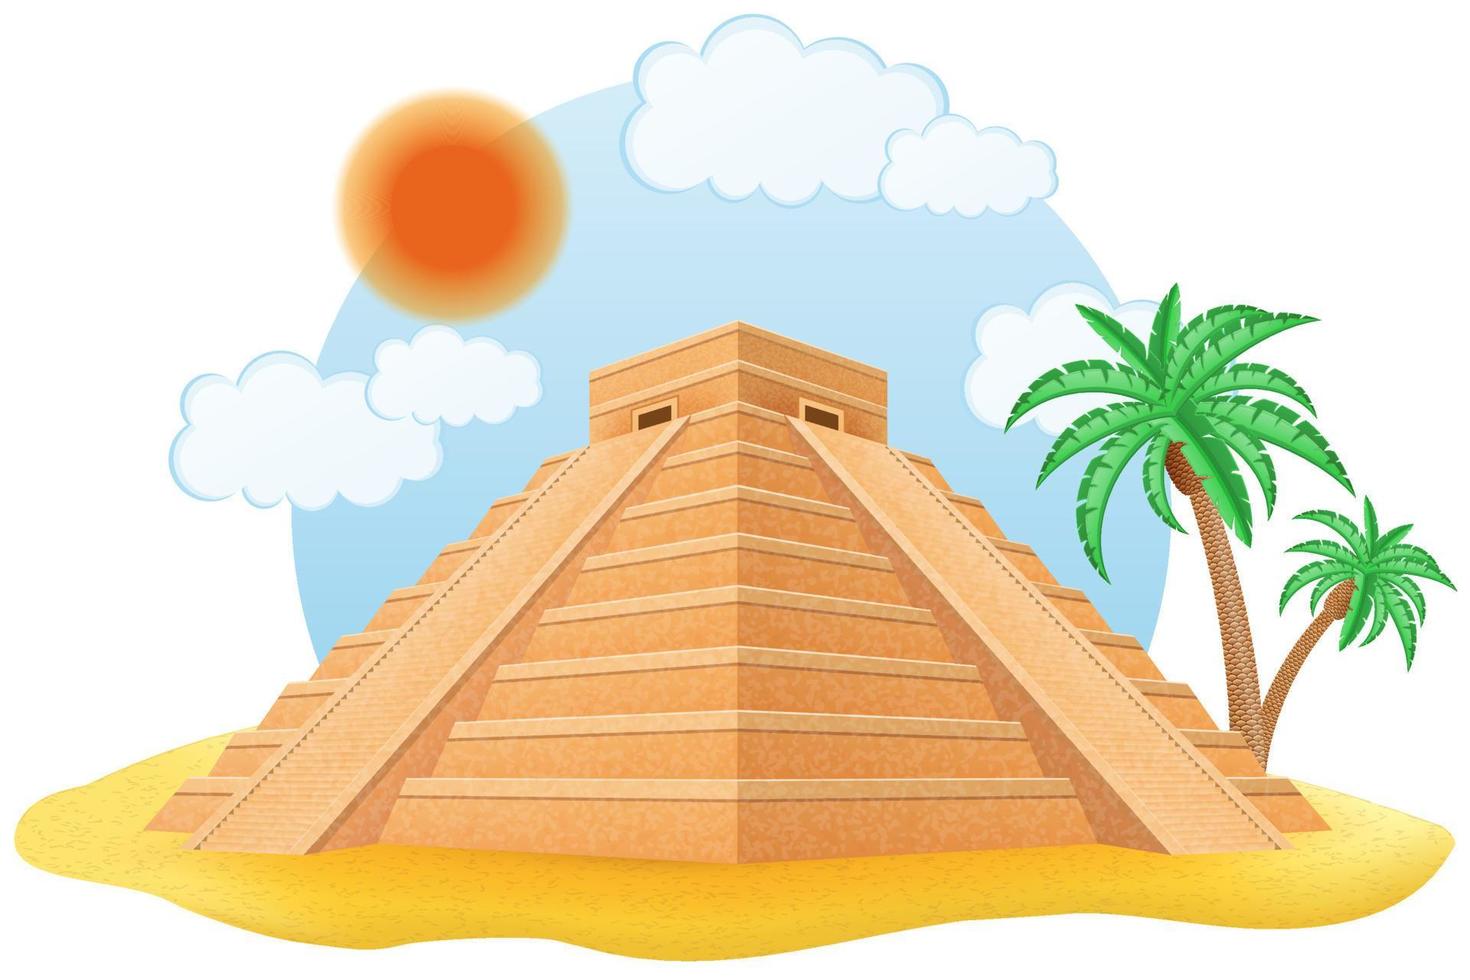 oude Maya piramide vectorillustratie geïsoleerd op een witte achtergrond vector